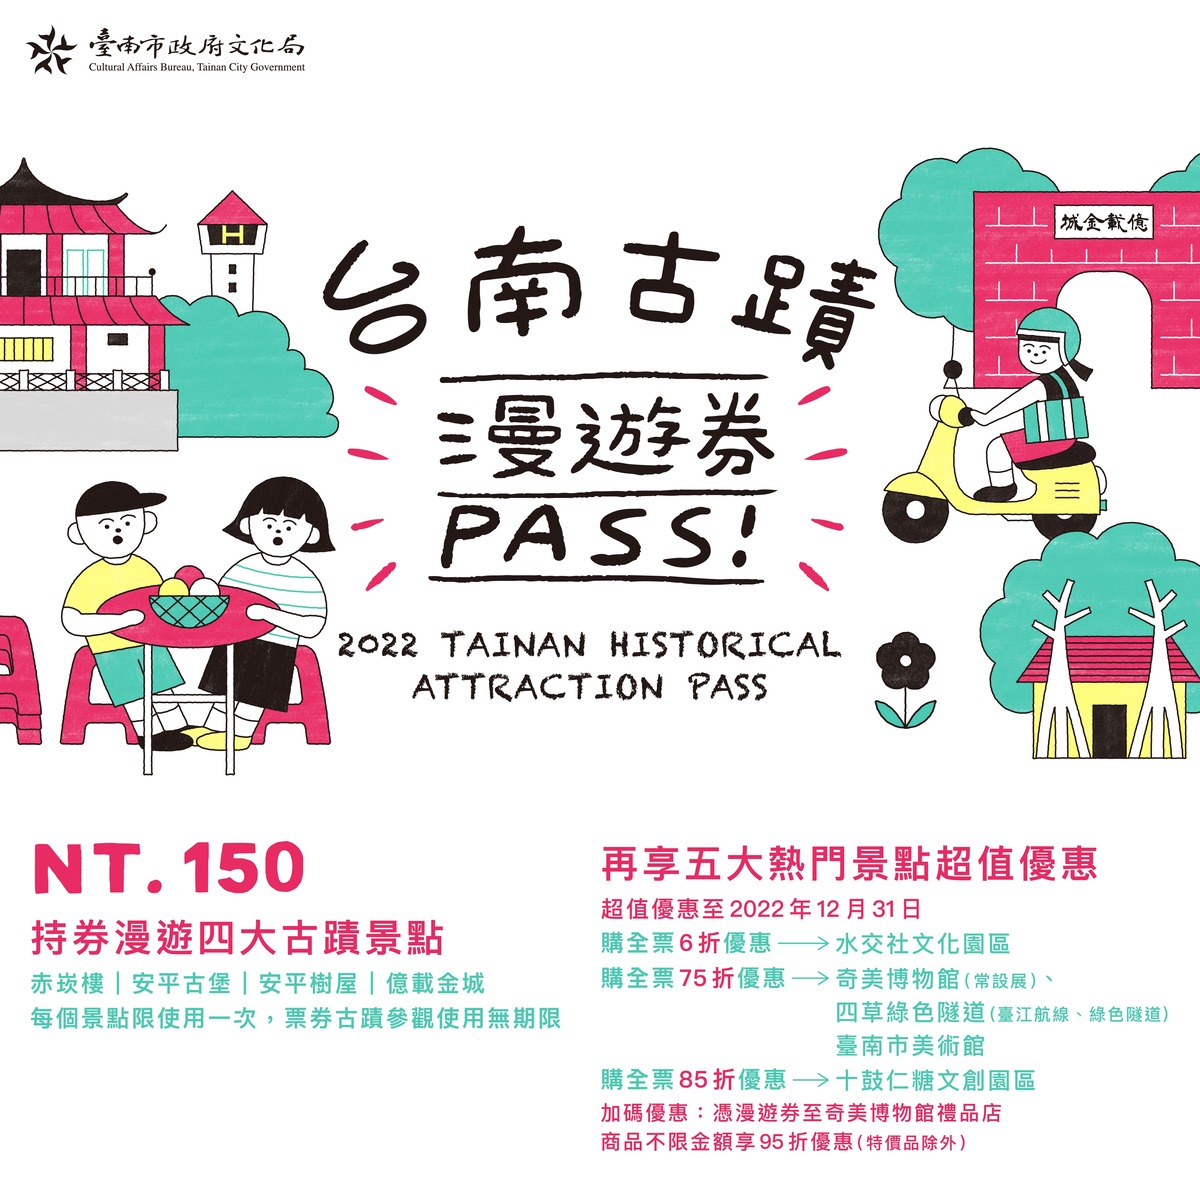 「臺南古蹟漫遊券」銷售已經超過2萬3000張囉！ 邀您一起來欣賞